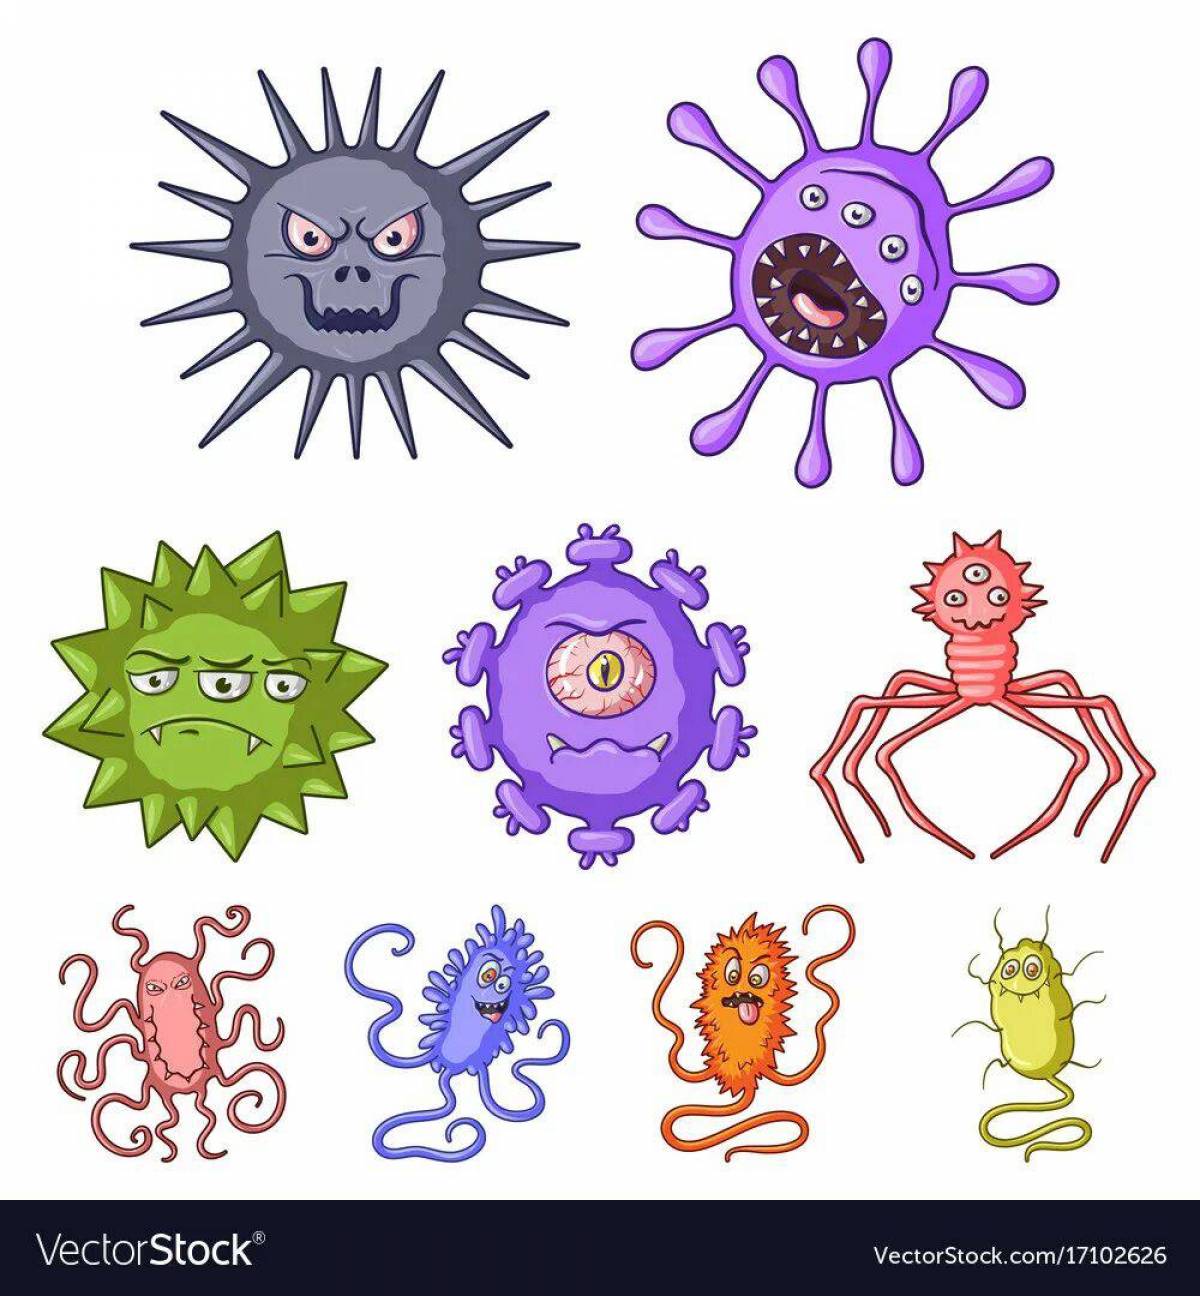 Вирусы и микробы для детей #10